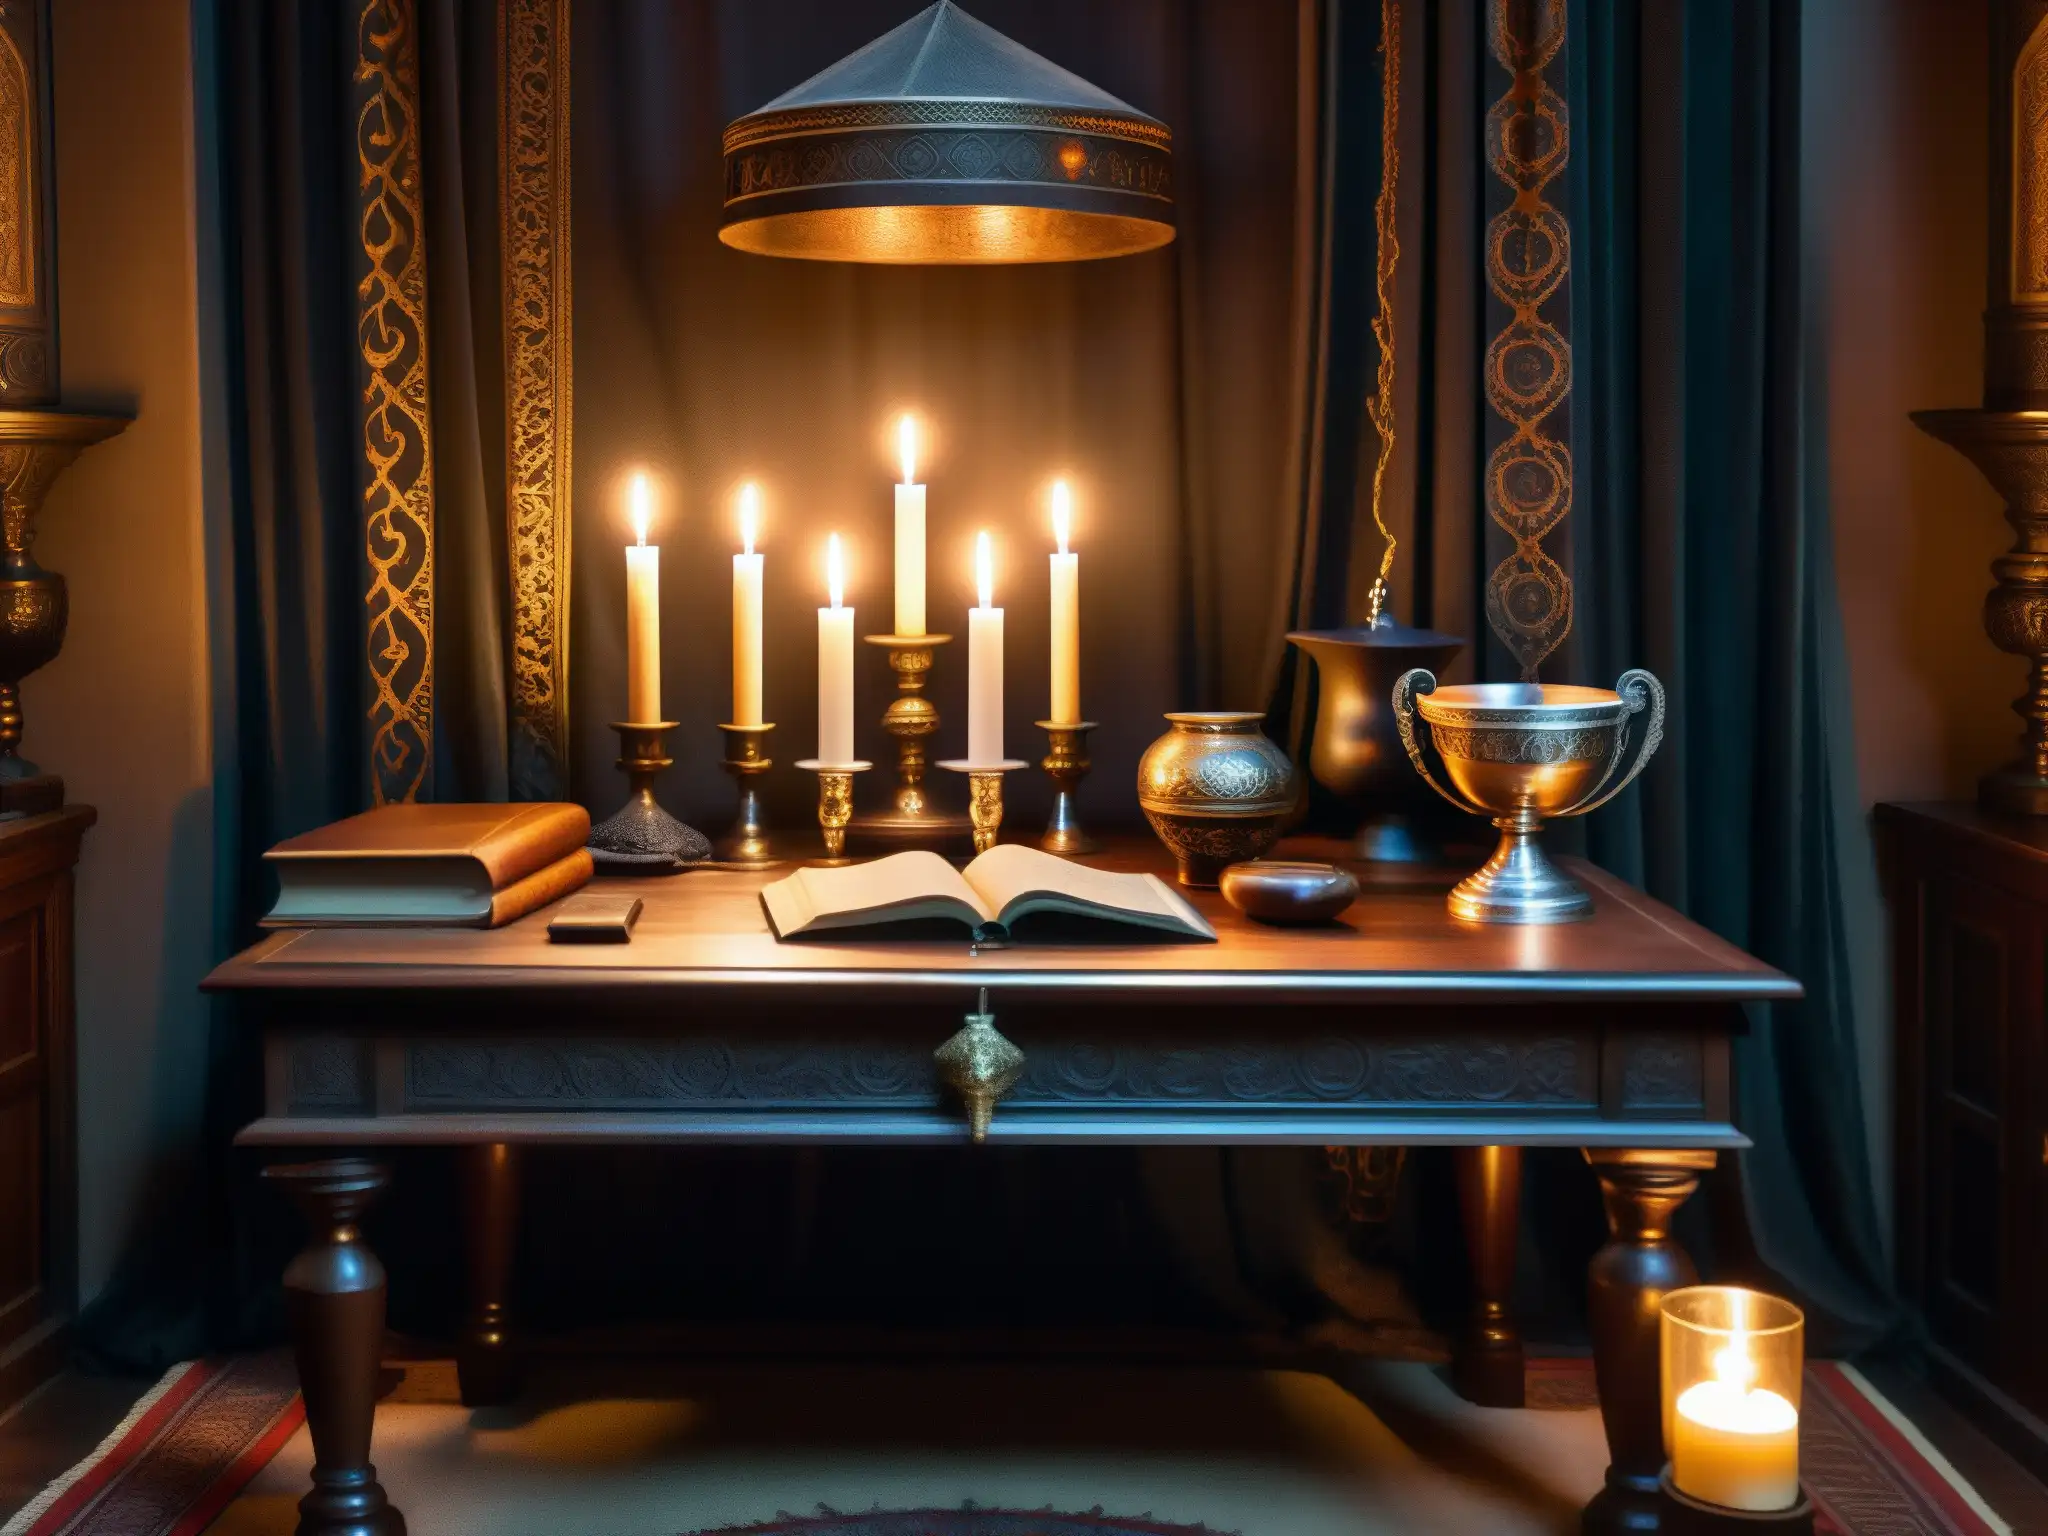 En una habitación con muebles oscuros y cortinas de terciopelo, artefactos ocultistas reposan sobre una mesa de madera